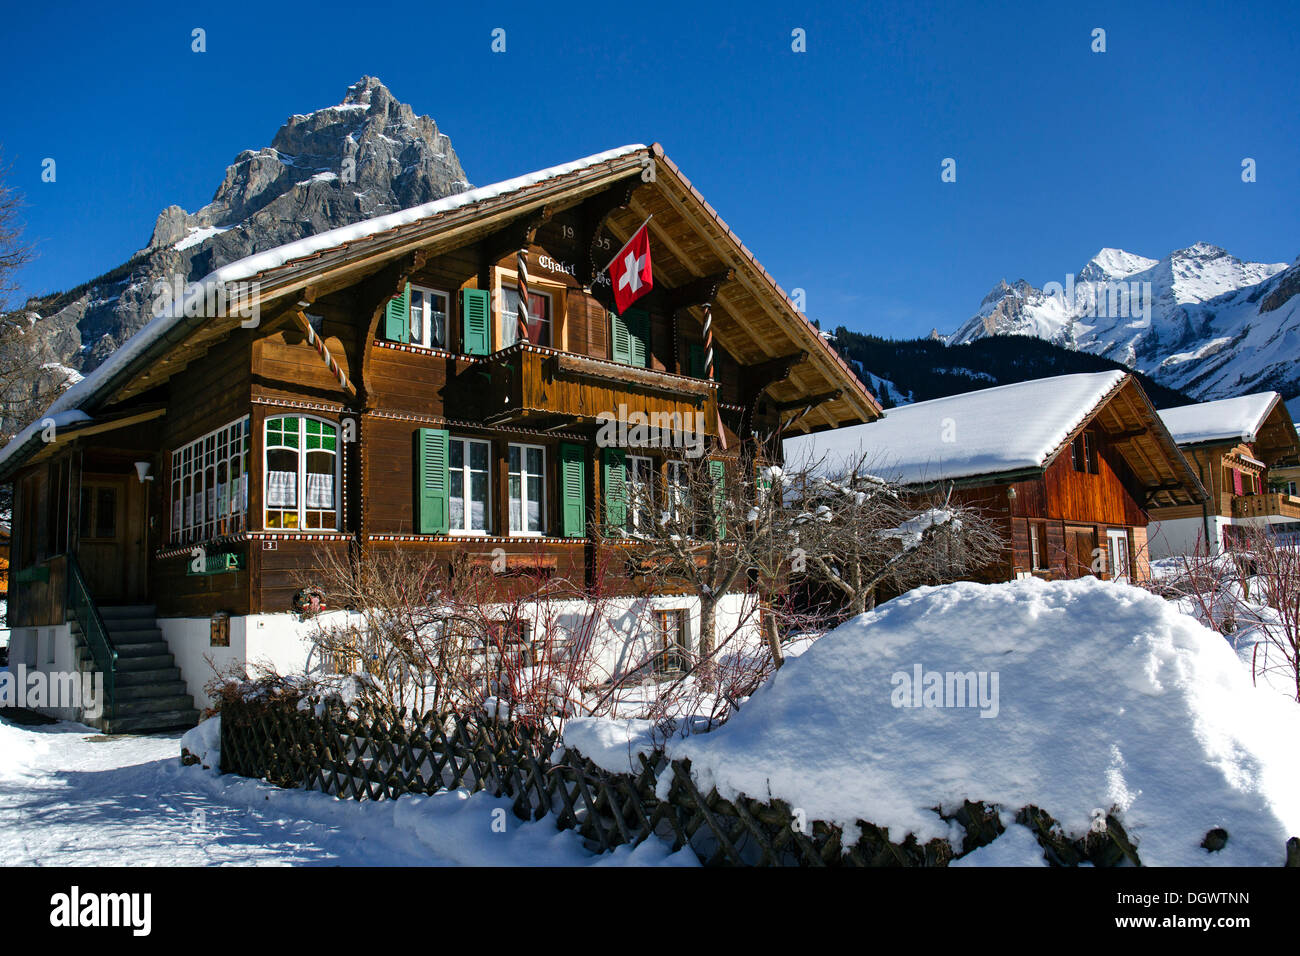 Chalet mit einer Schweizer Flagge, Bire Berg auf der linken Seite, Blueemlisalp massiv auf die richtige, Winter Landschaft, Berner Alpen Stockfoto